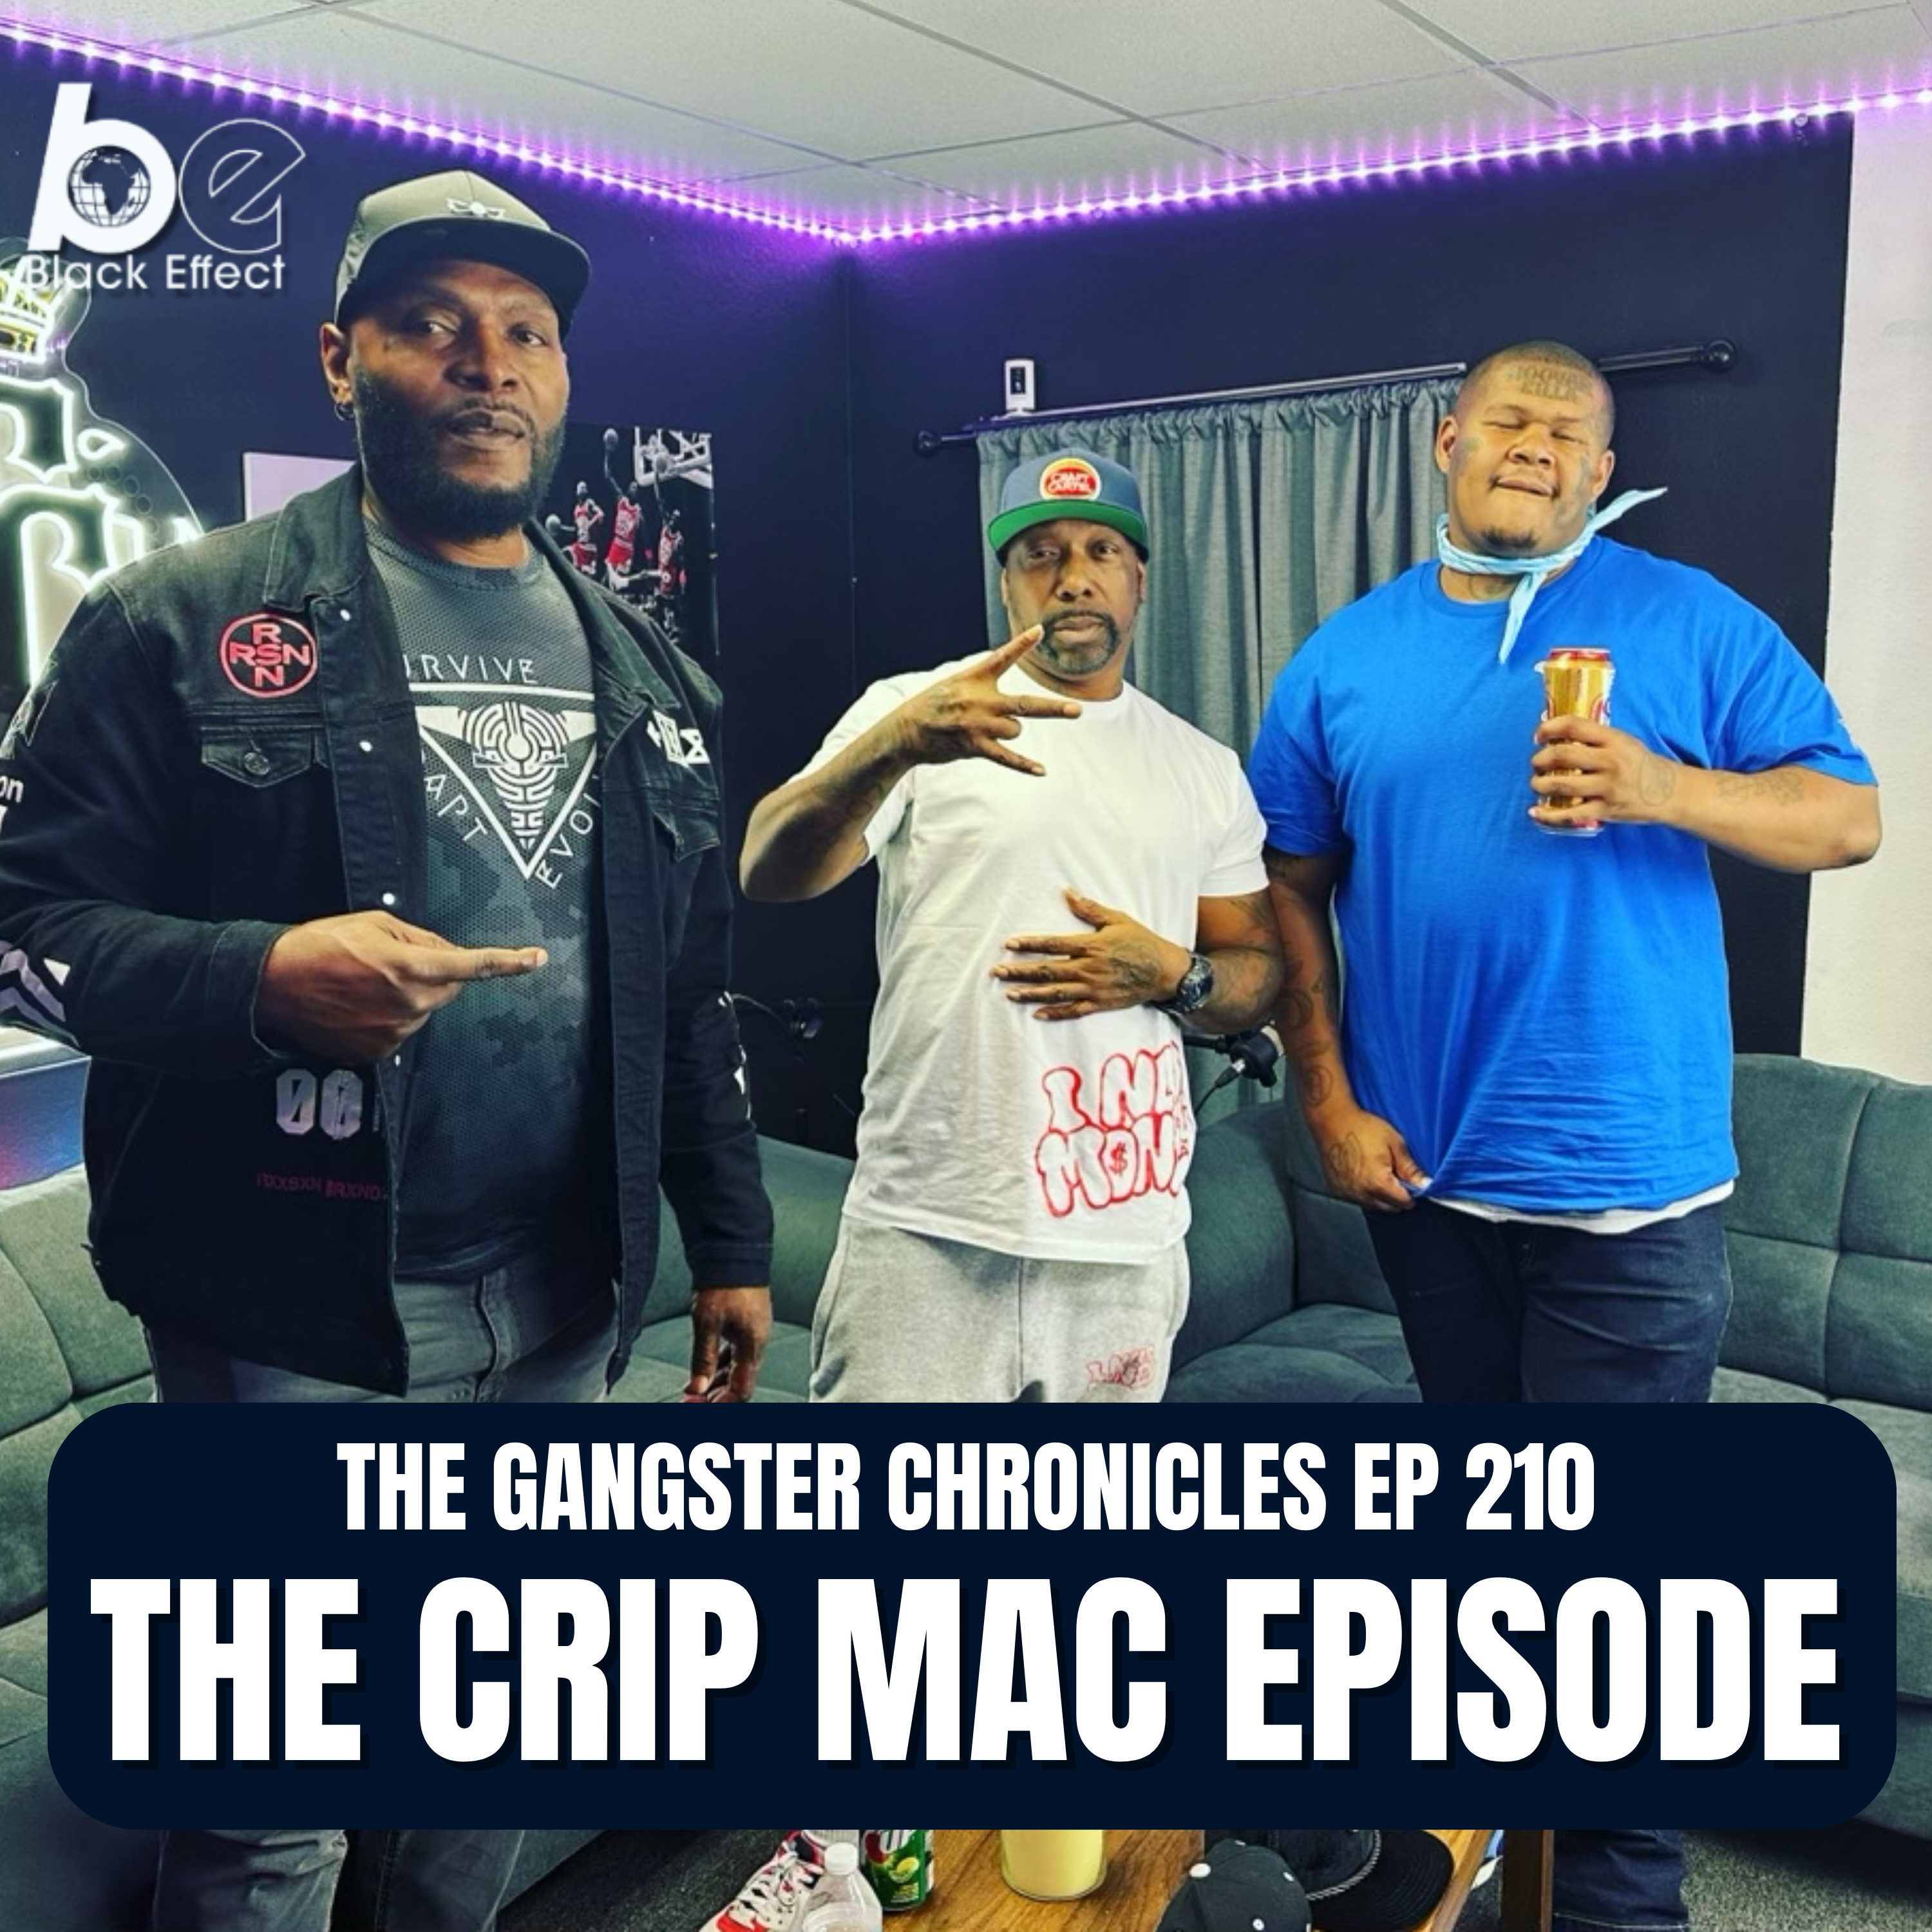 The Crip Mac Episode